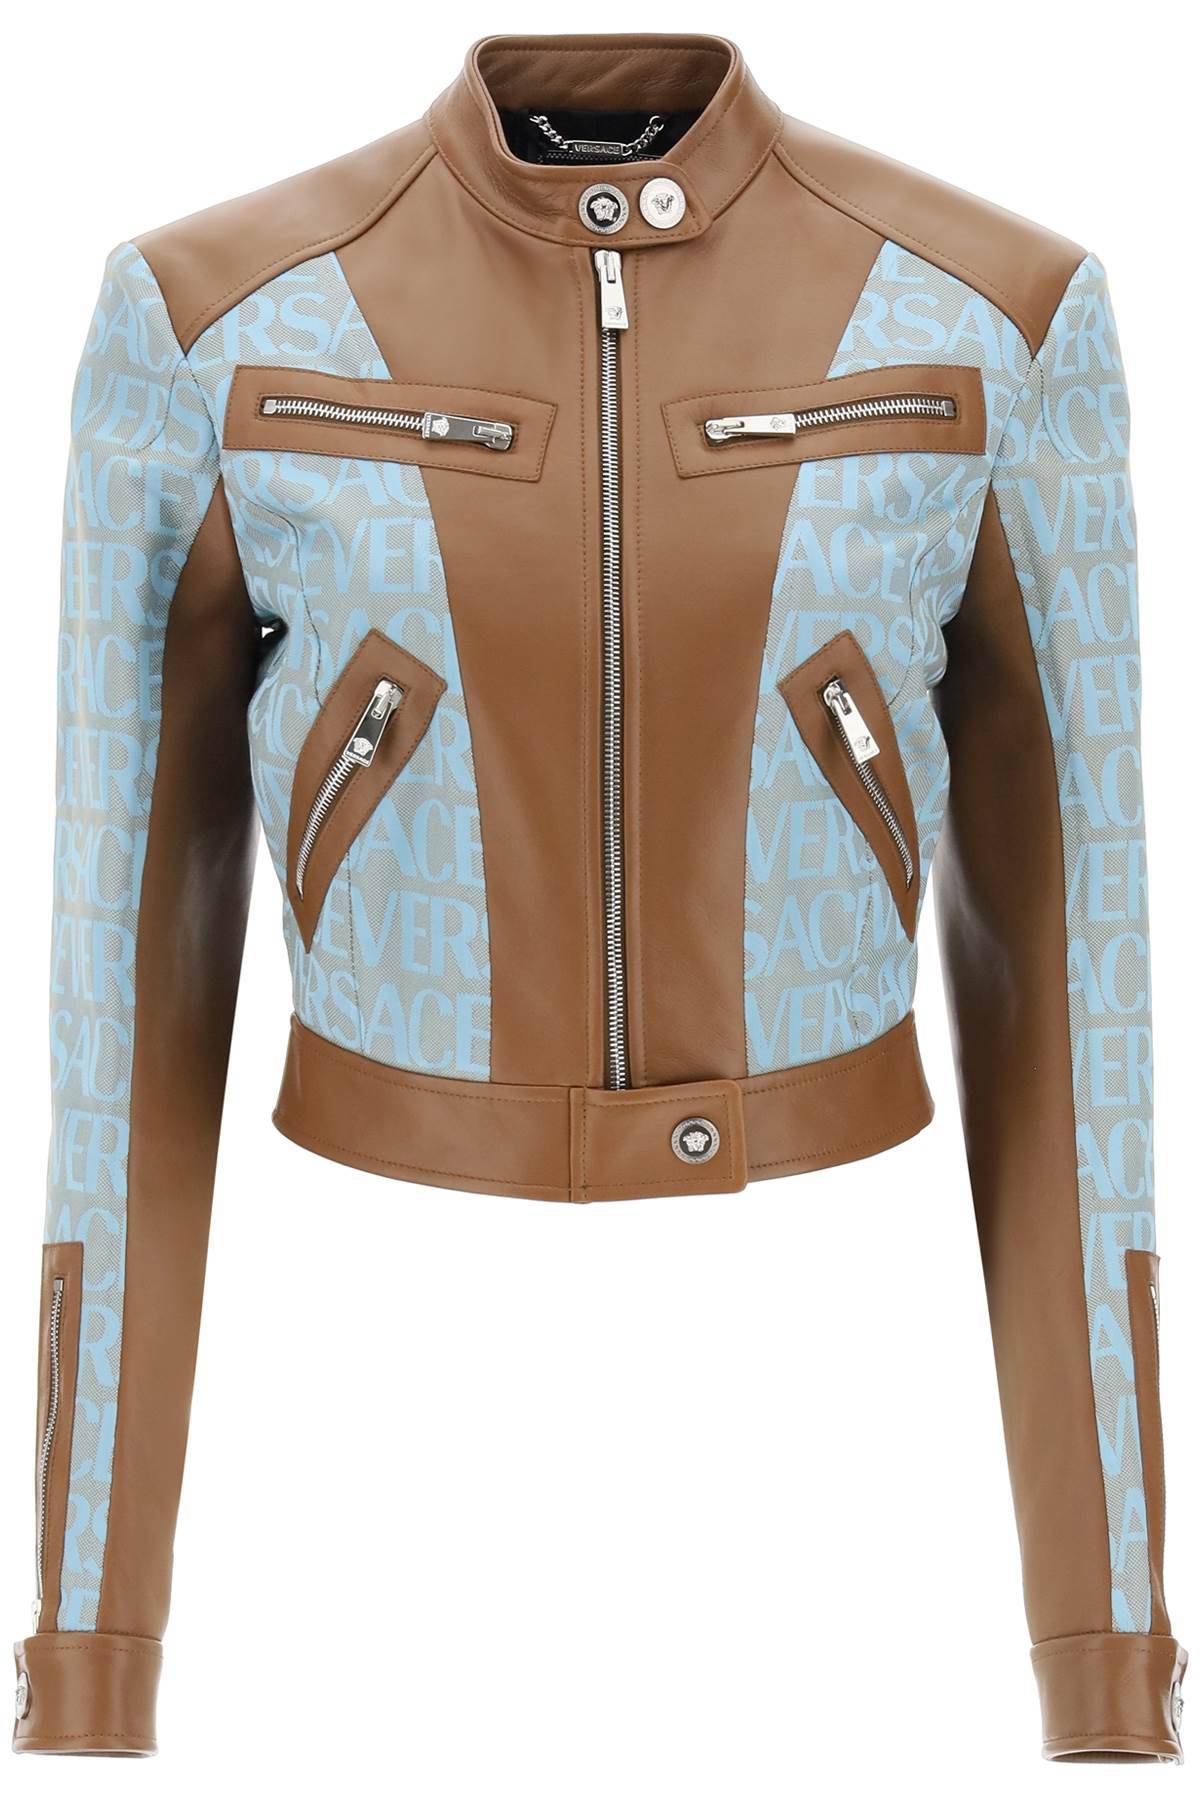 Versace VERSACE 'versace allover' lamb leather biker jacket